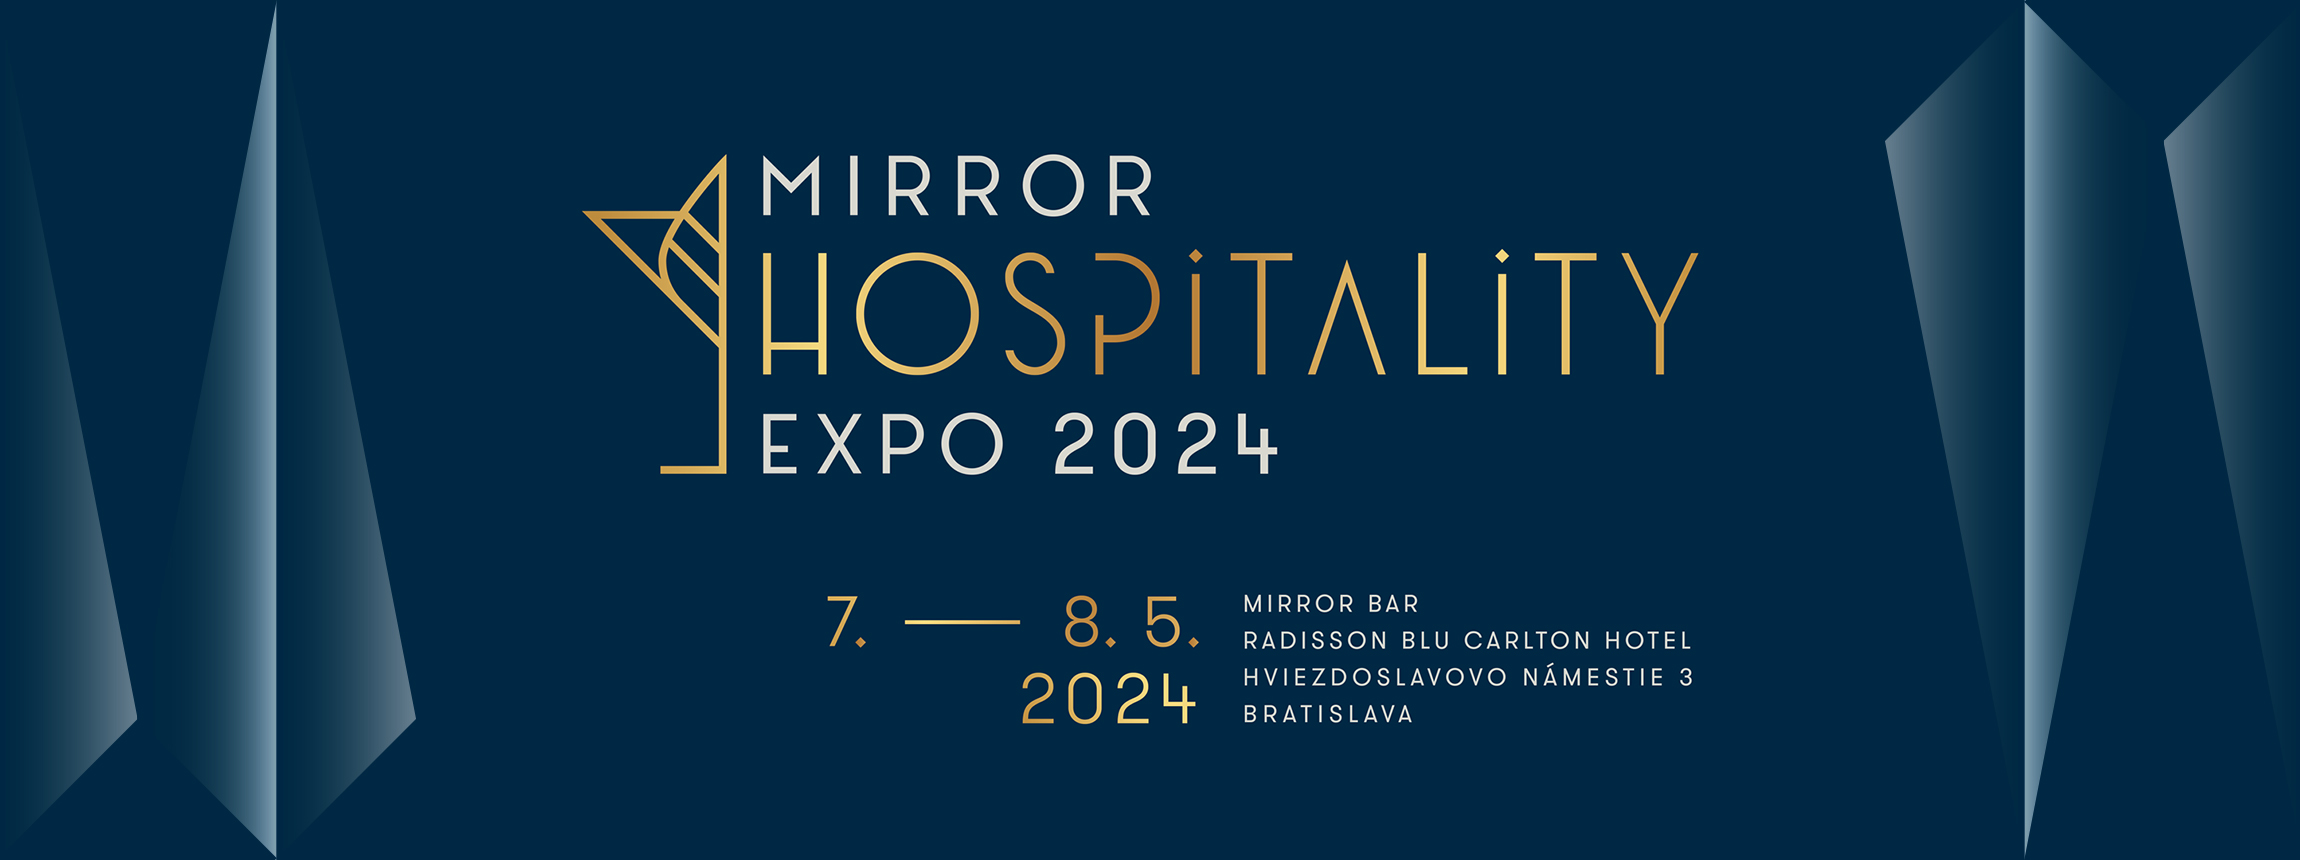 Mirror Hospitality Expo 2024